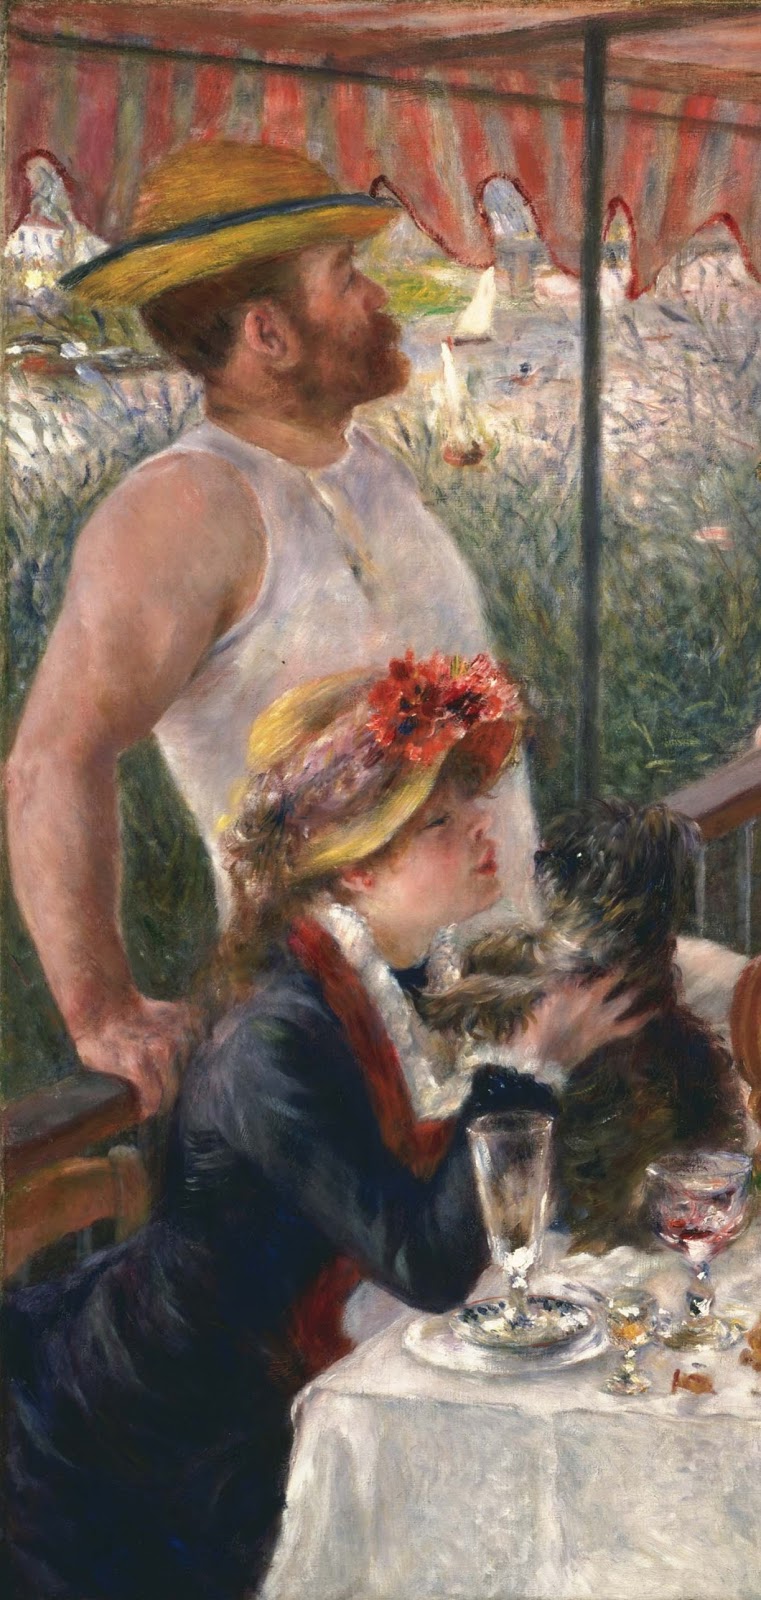 Pierre+Auguste+Renoir-1841-1-19 (560).jpg